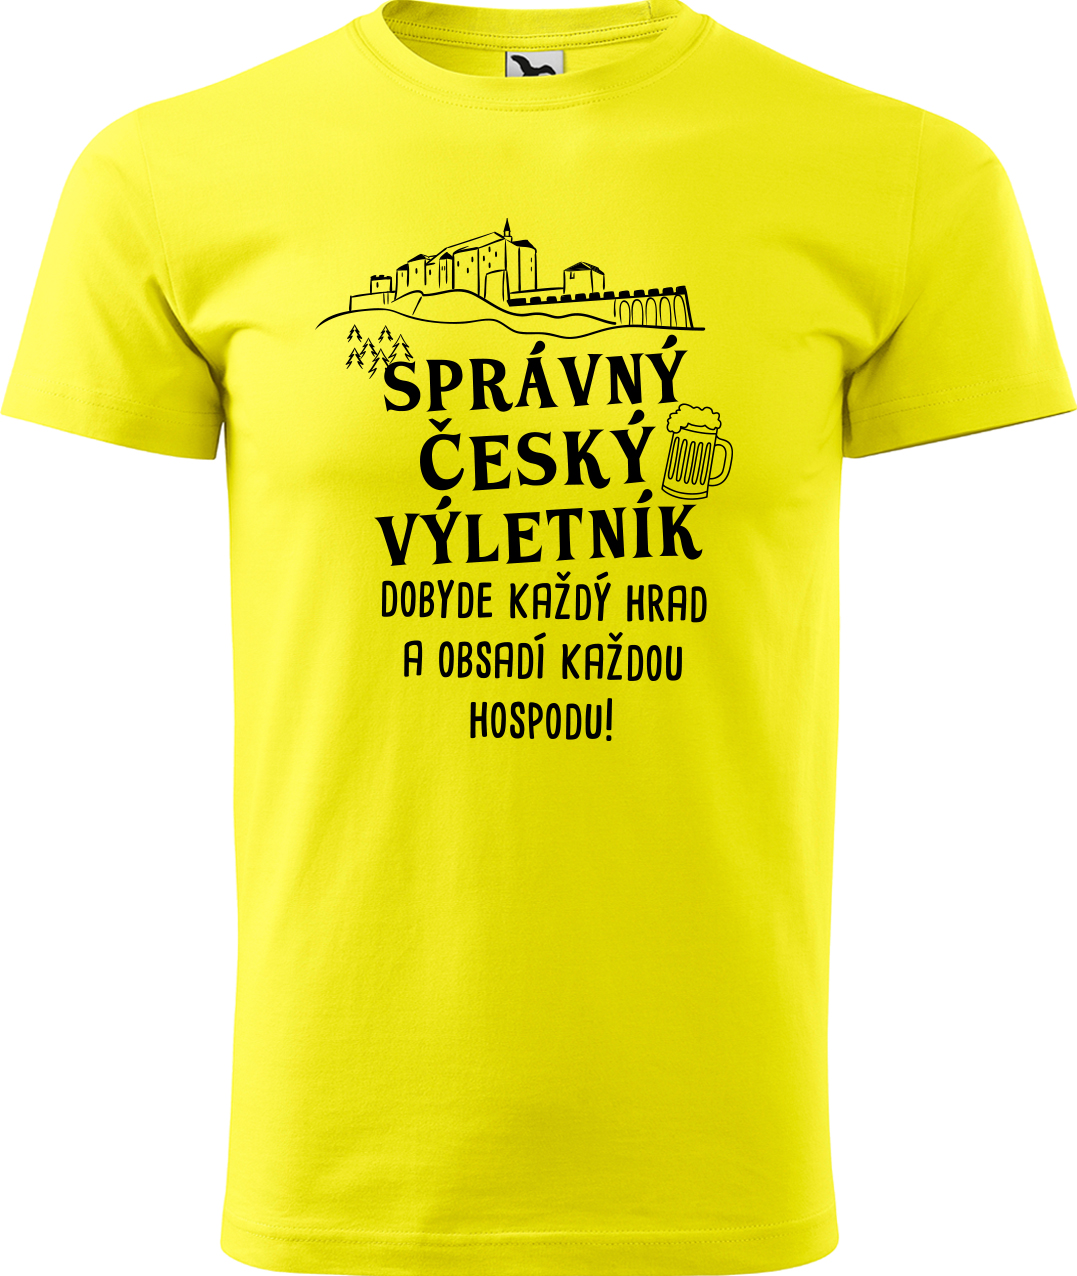 Pánské cestovatelské tričko - Správný český výletník Velikost: L, Barva: Žlutá (04), Střih: pánský